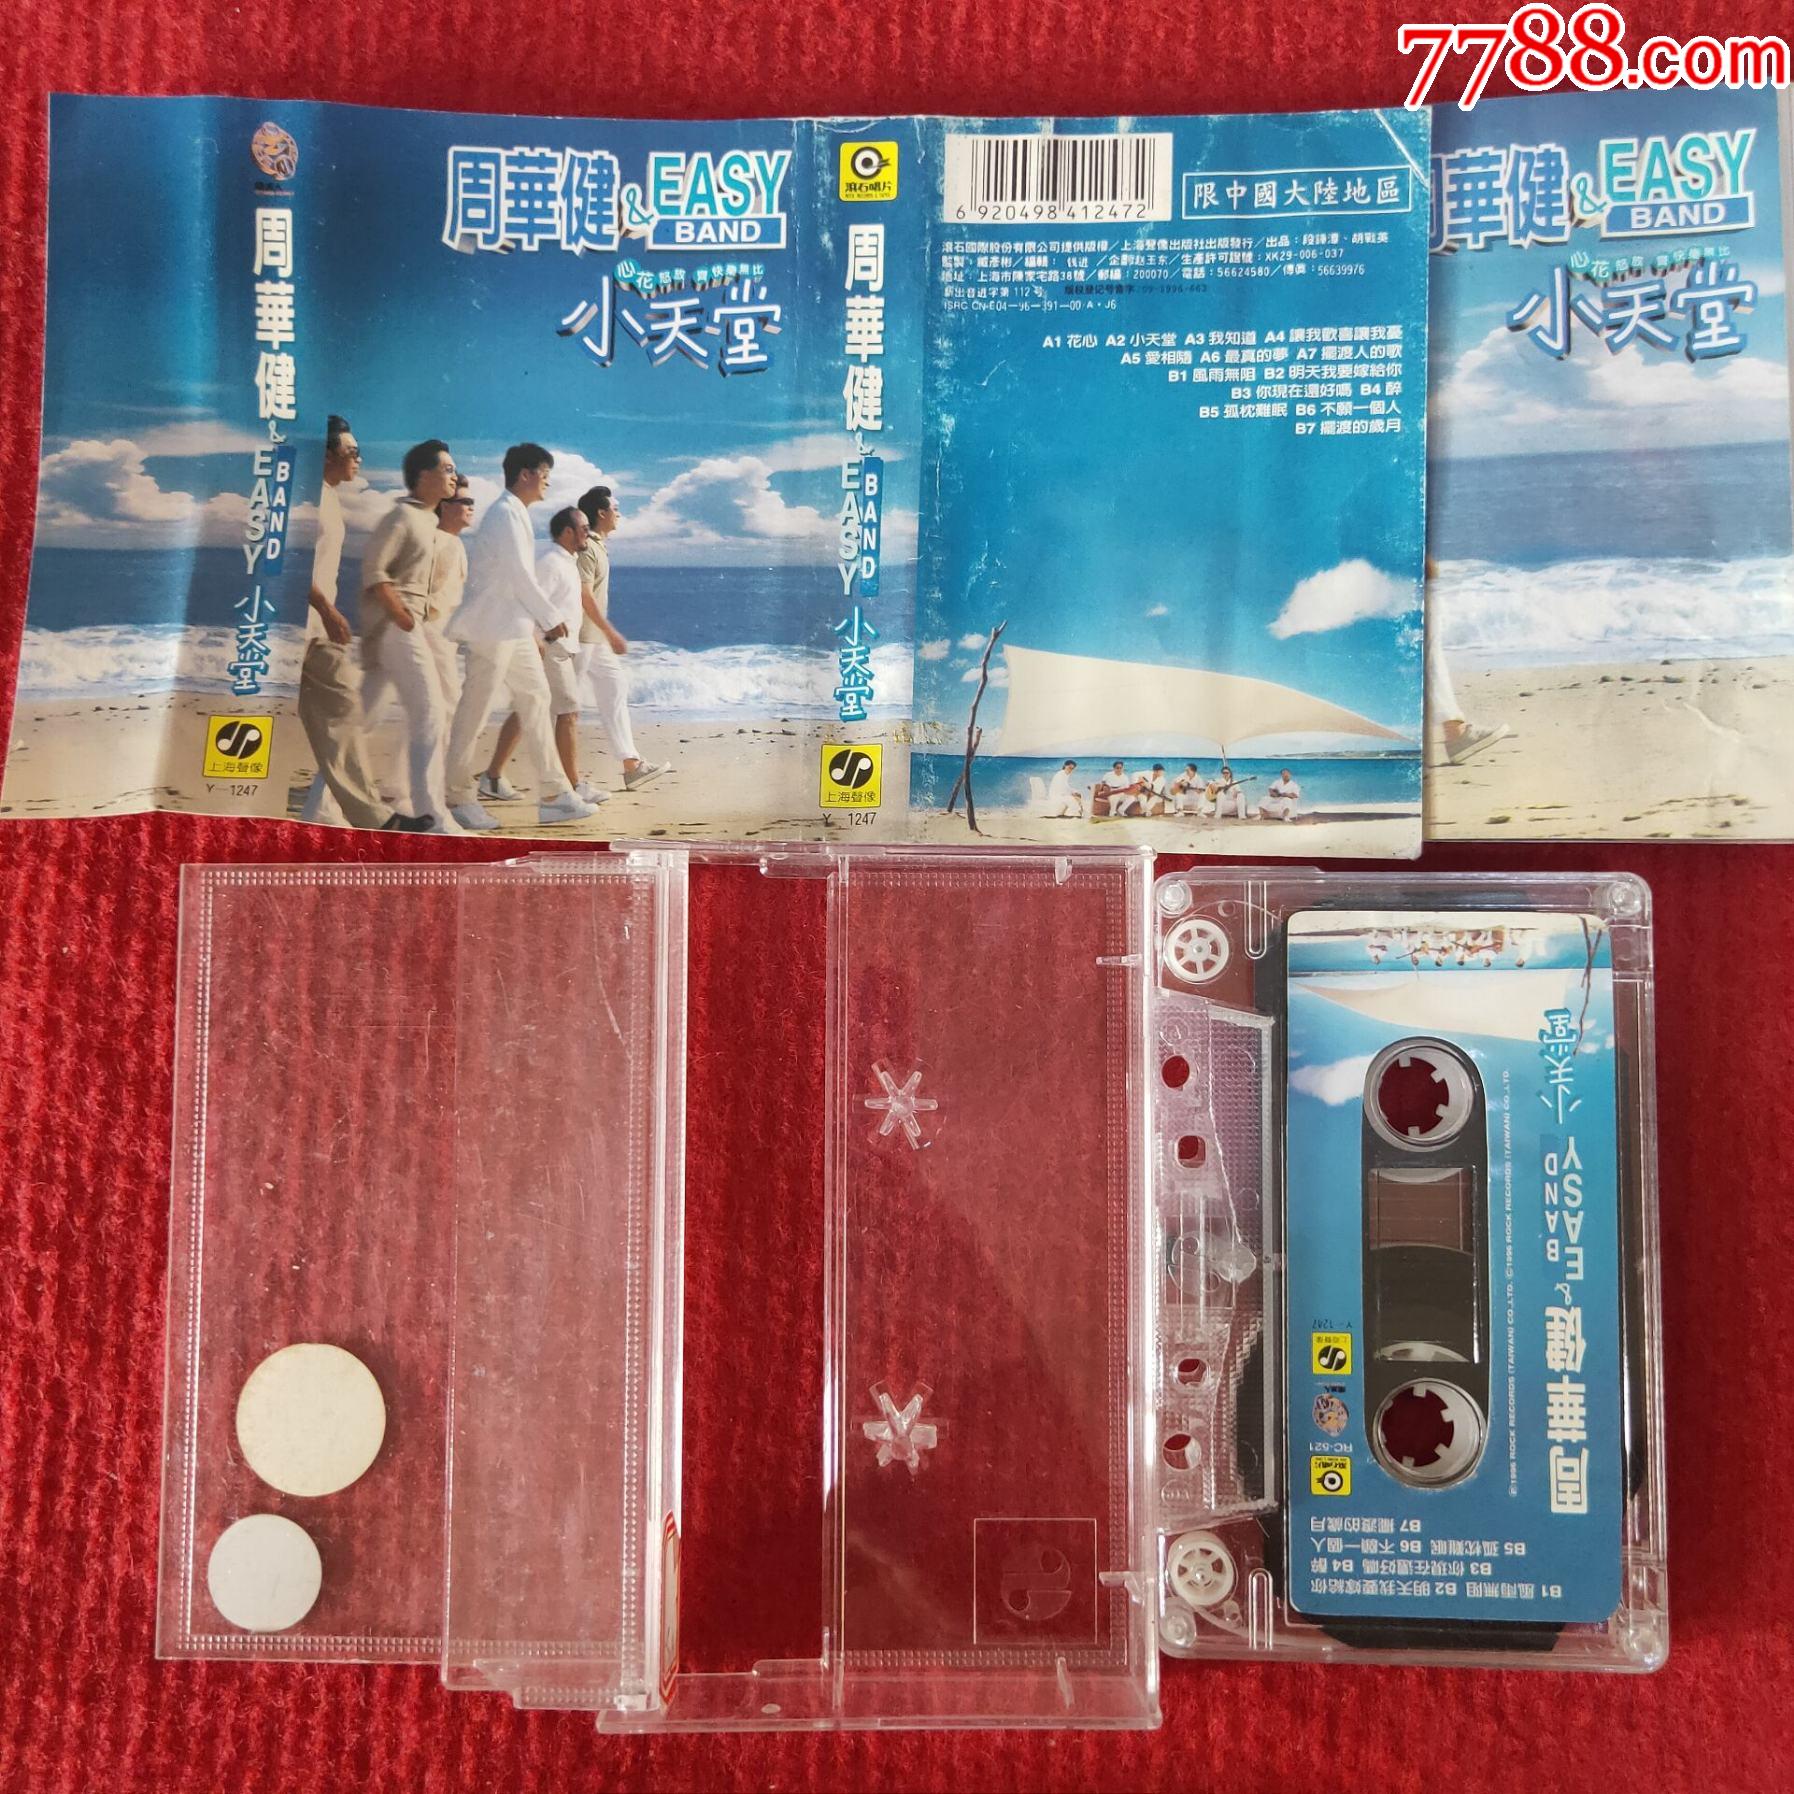 原装正版磁带周华健专辑小天堂上海声像出版社出版发行